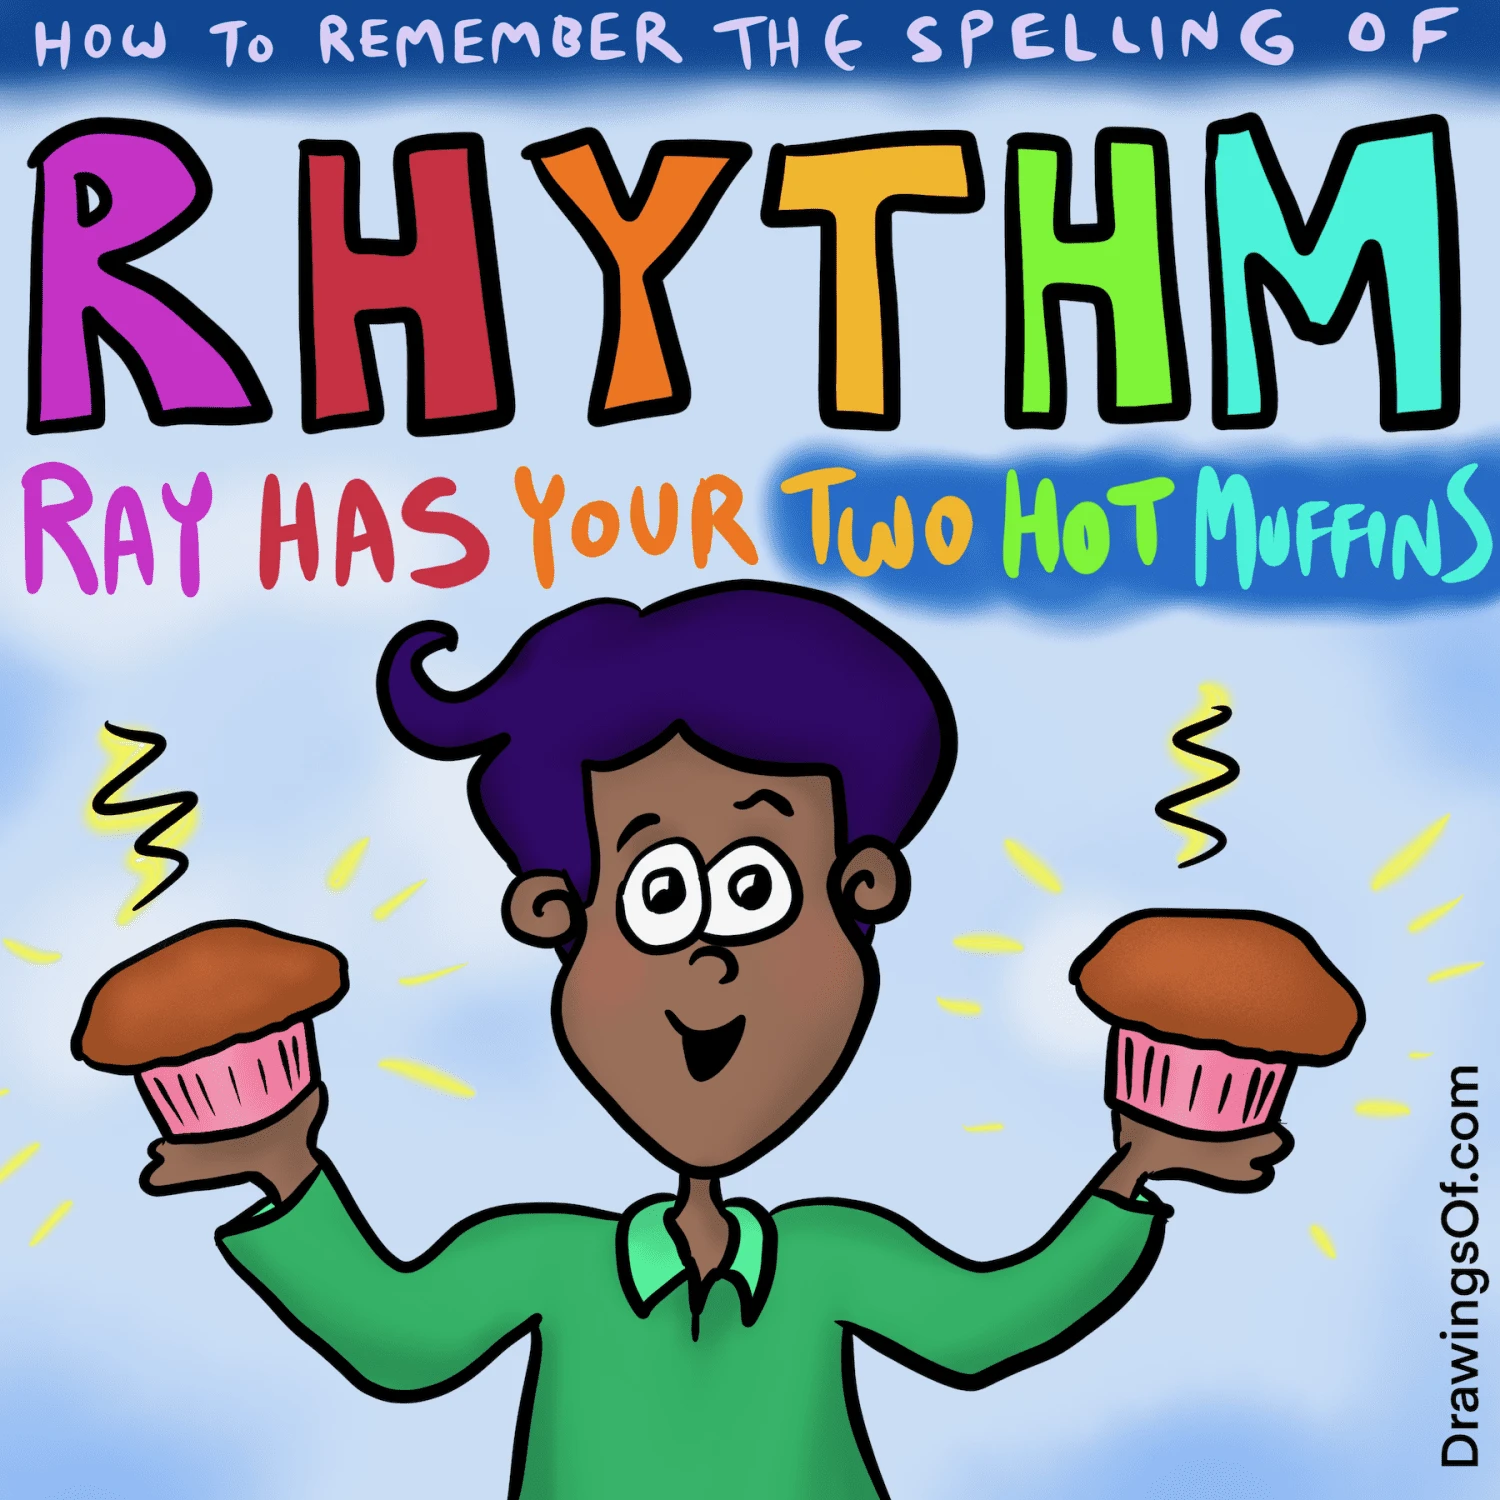 Spelling of rhythm